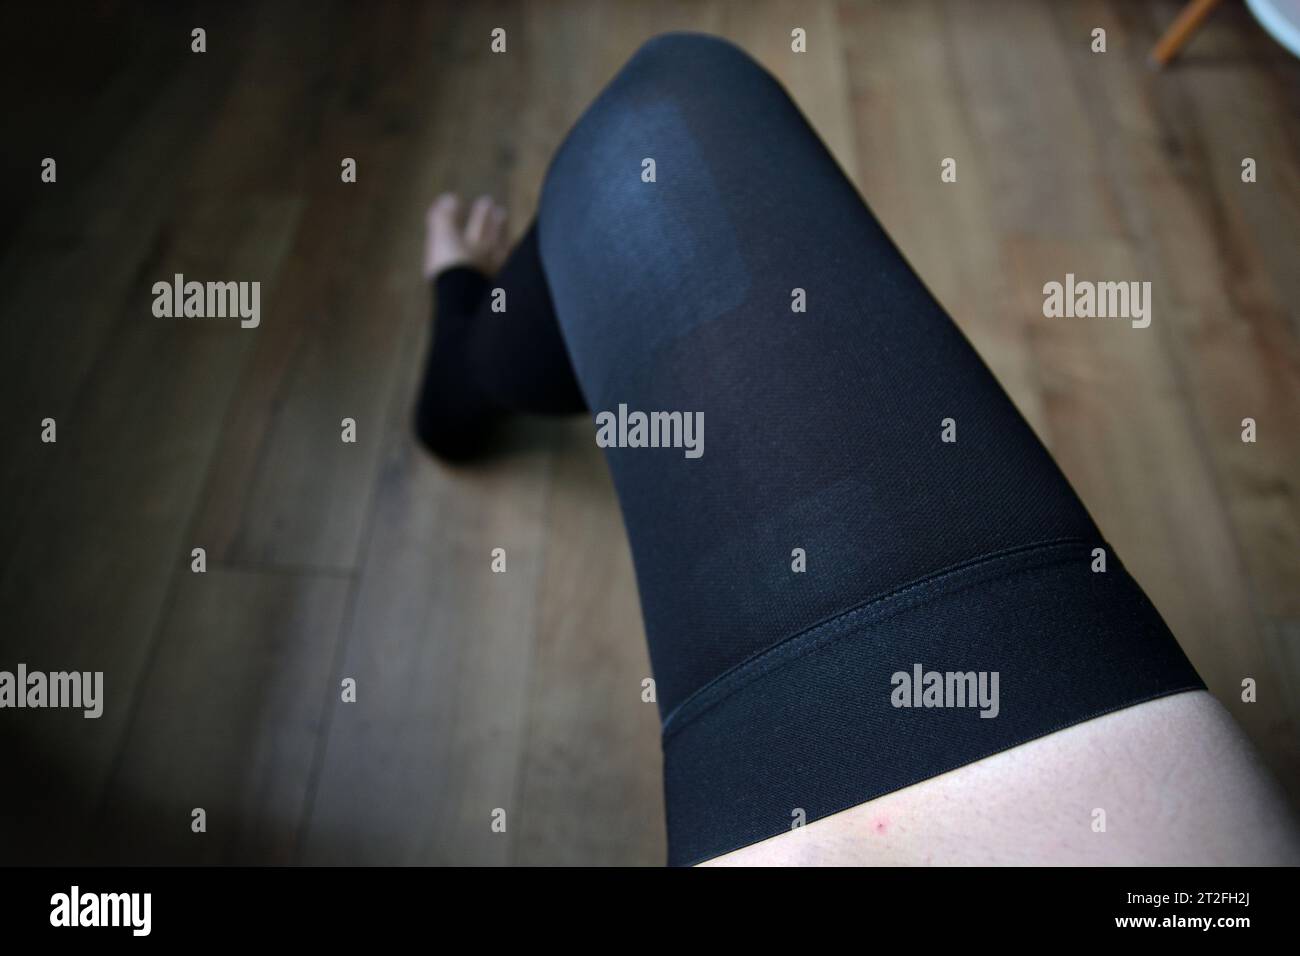 Una vista delle calze unisex elastiche della coscia a compressione medica senza vestizione puntale sulla gamba della persona dopo un intervento chirurgico alla vena varicosa con un laser. Foto Stock